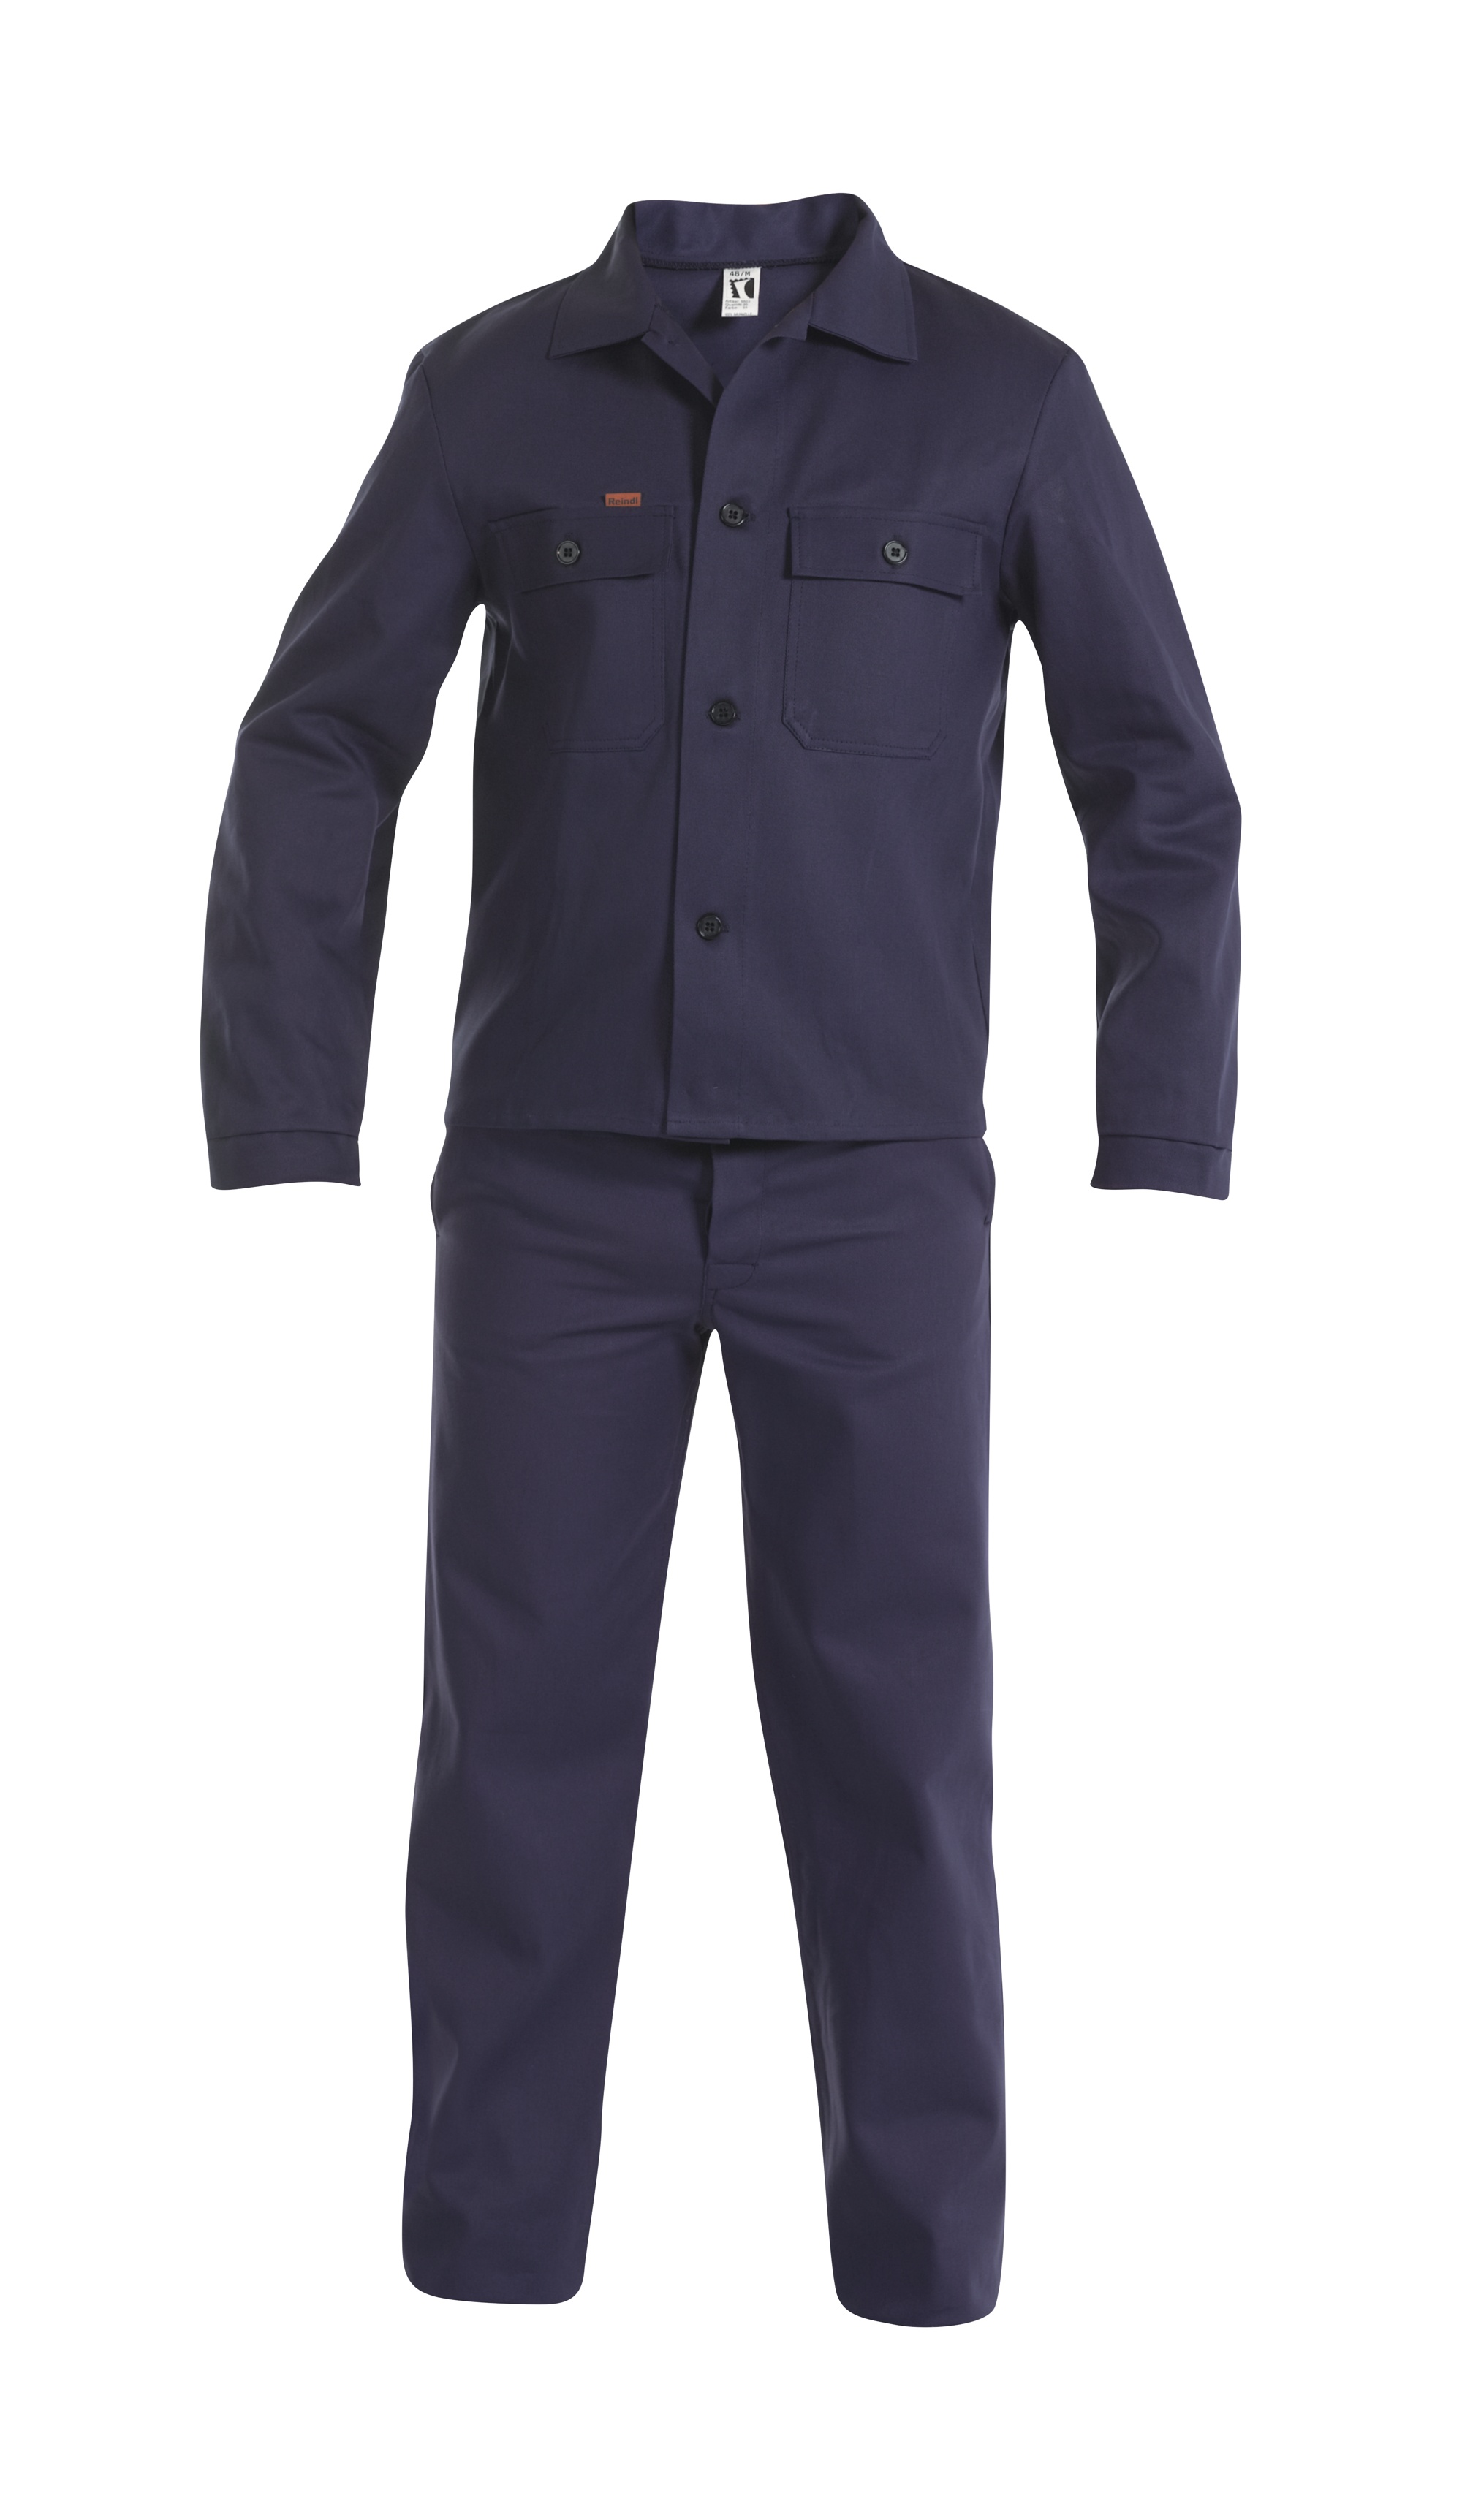 REINDL | Arbeitsanzug mit Bandzughose | Arbeitskleidung &  Arbeitsschutzartikel von Reindl